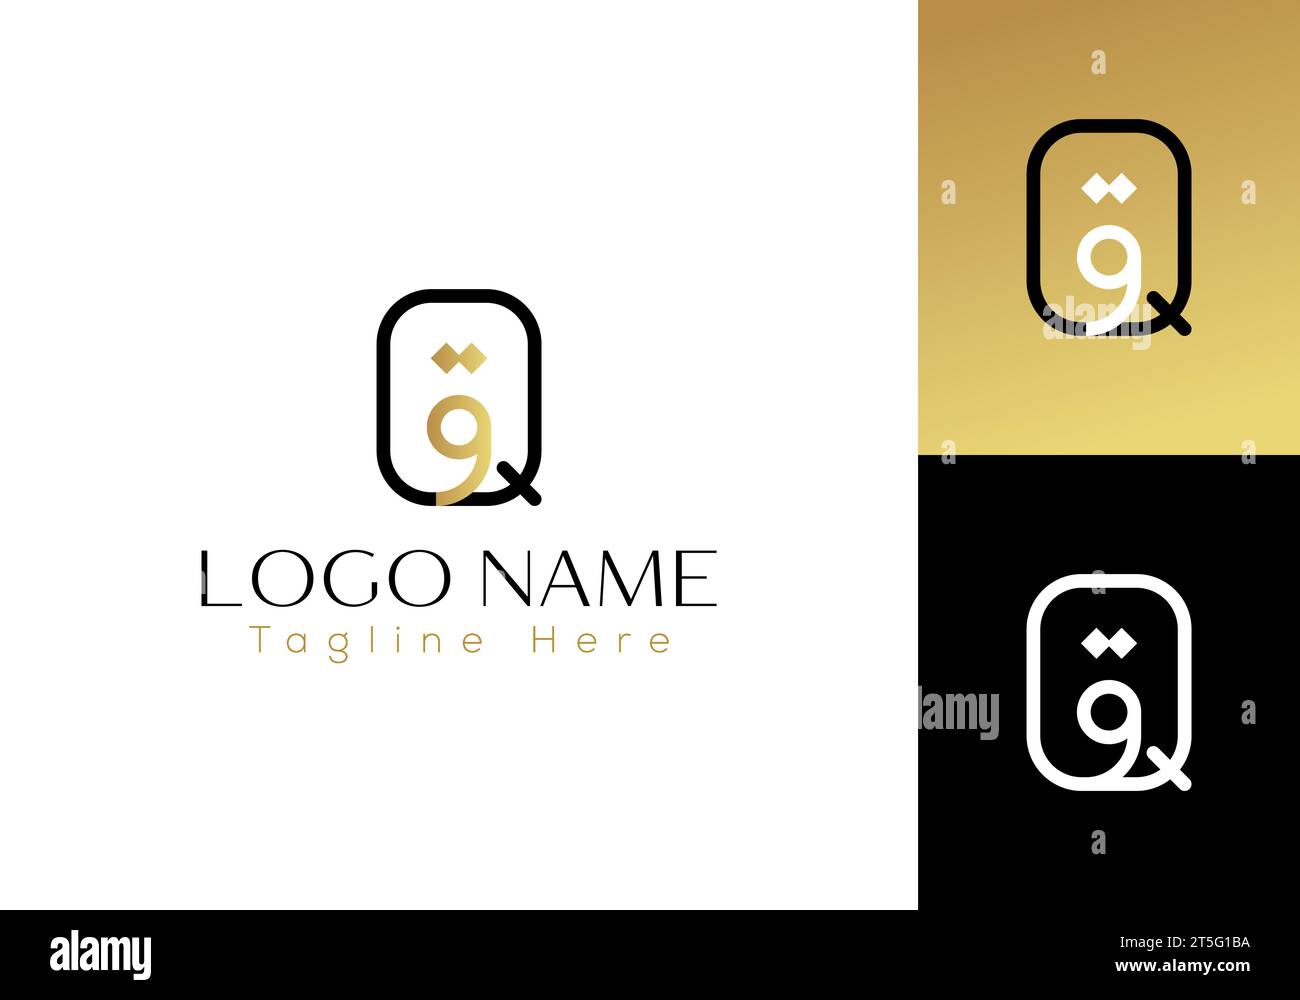 Q e il logo Qaf in horf arabo combinati, è minimalista, moderno, elegante e dal design semplice. adatto per digitale, società di partnership, società ecc. Illustrazione Vettoriale